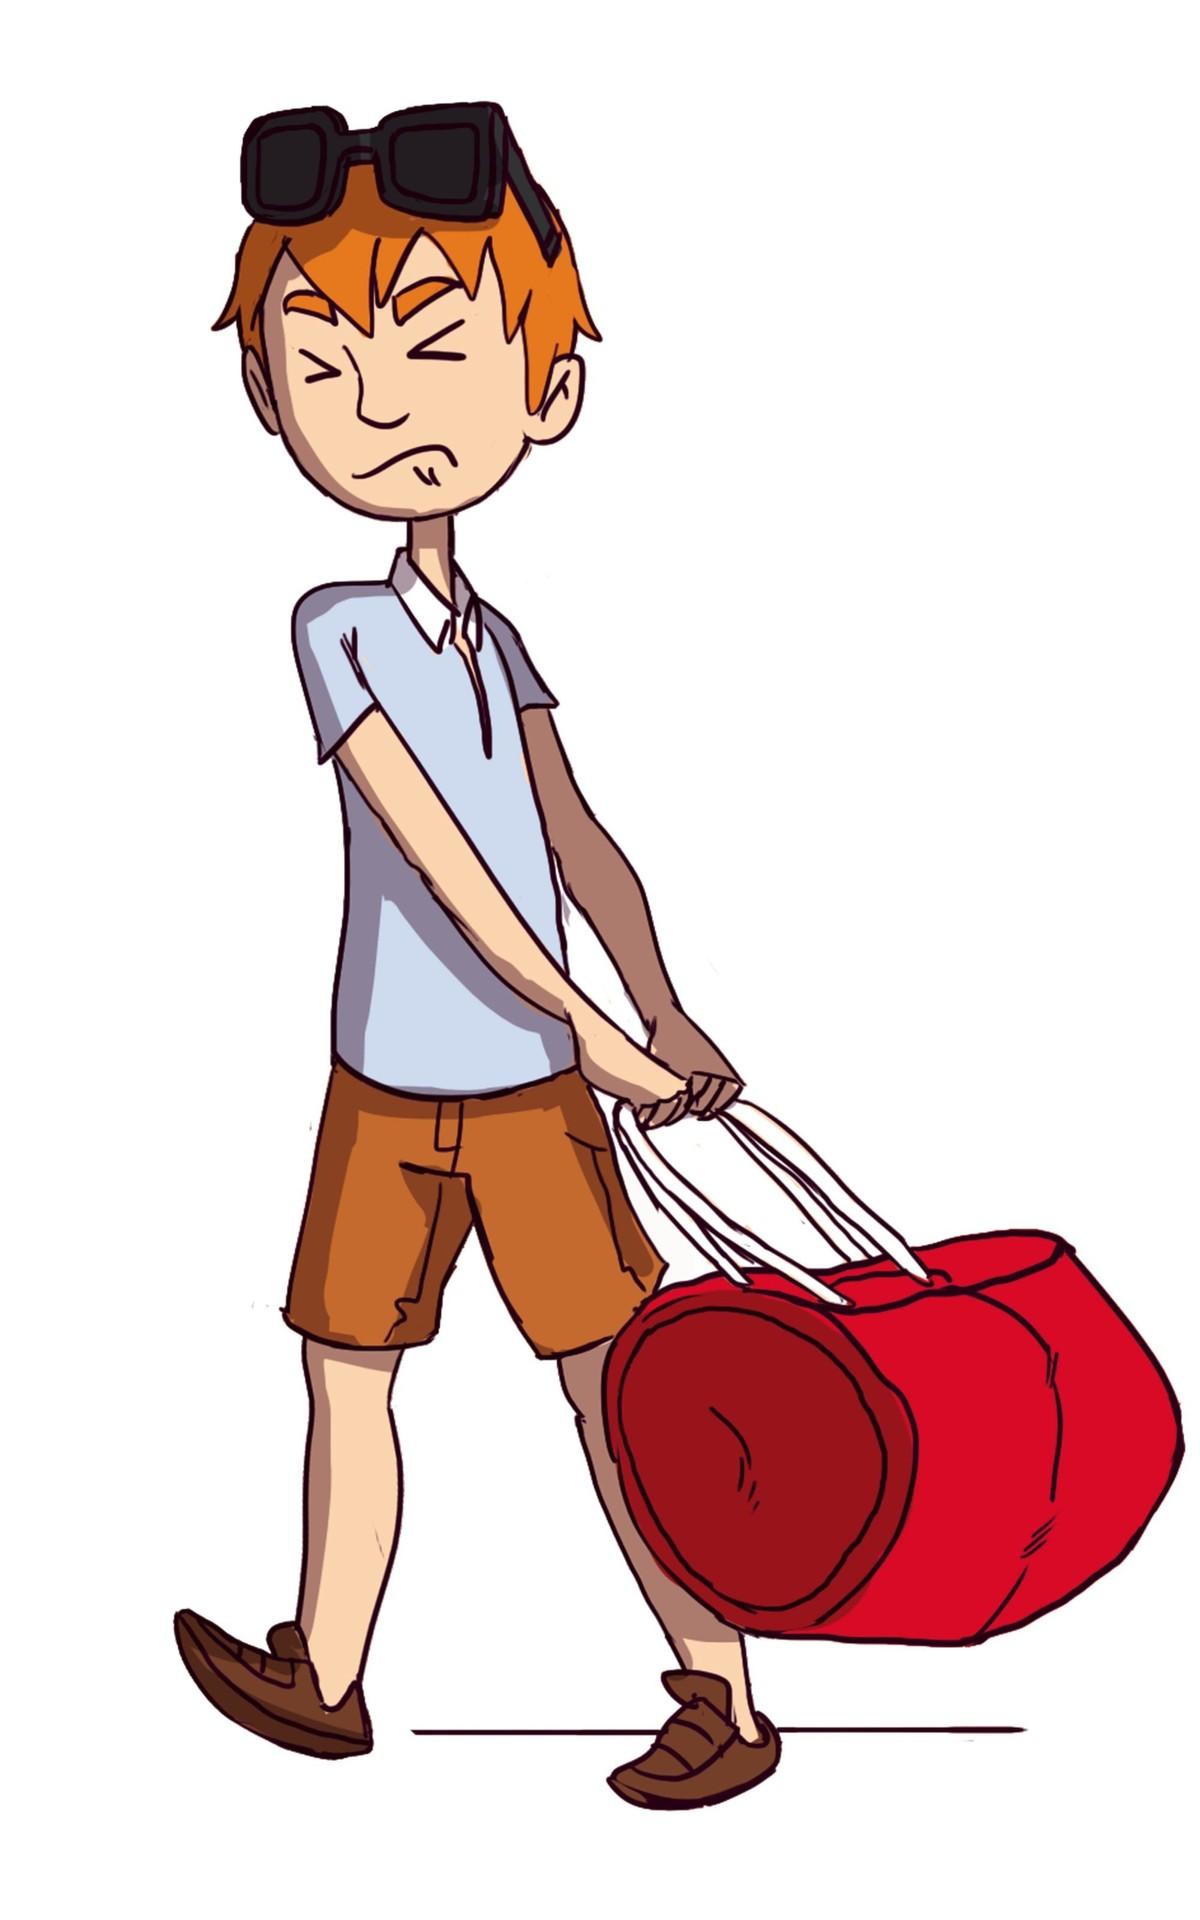 Jeune homme qui tire un sac de voyage qui semble lourd